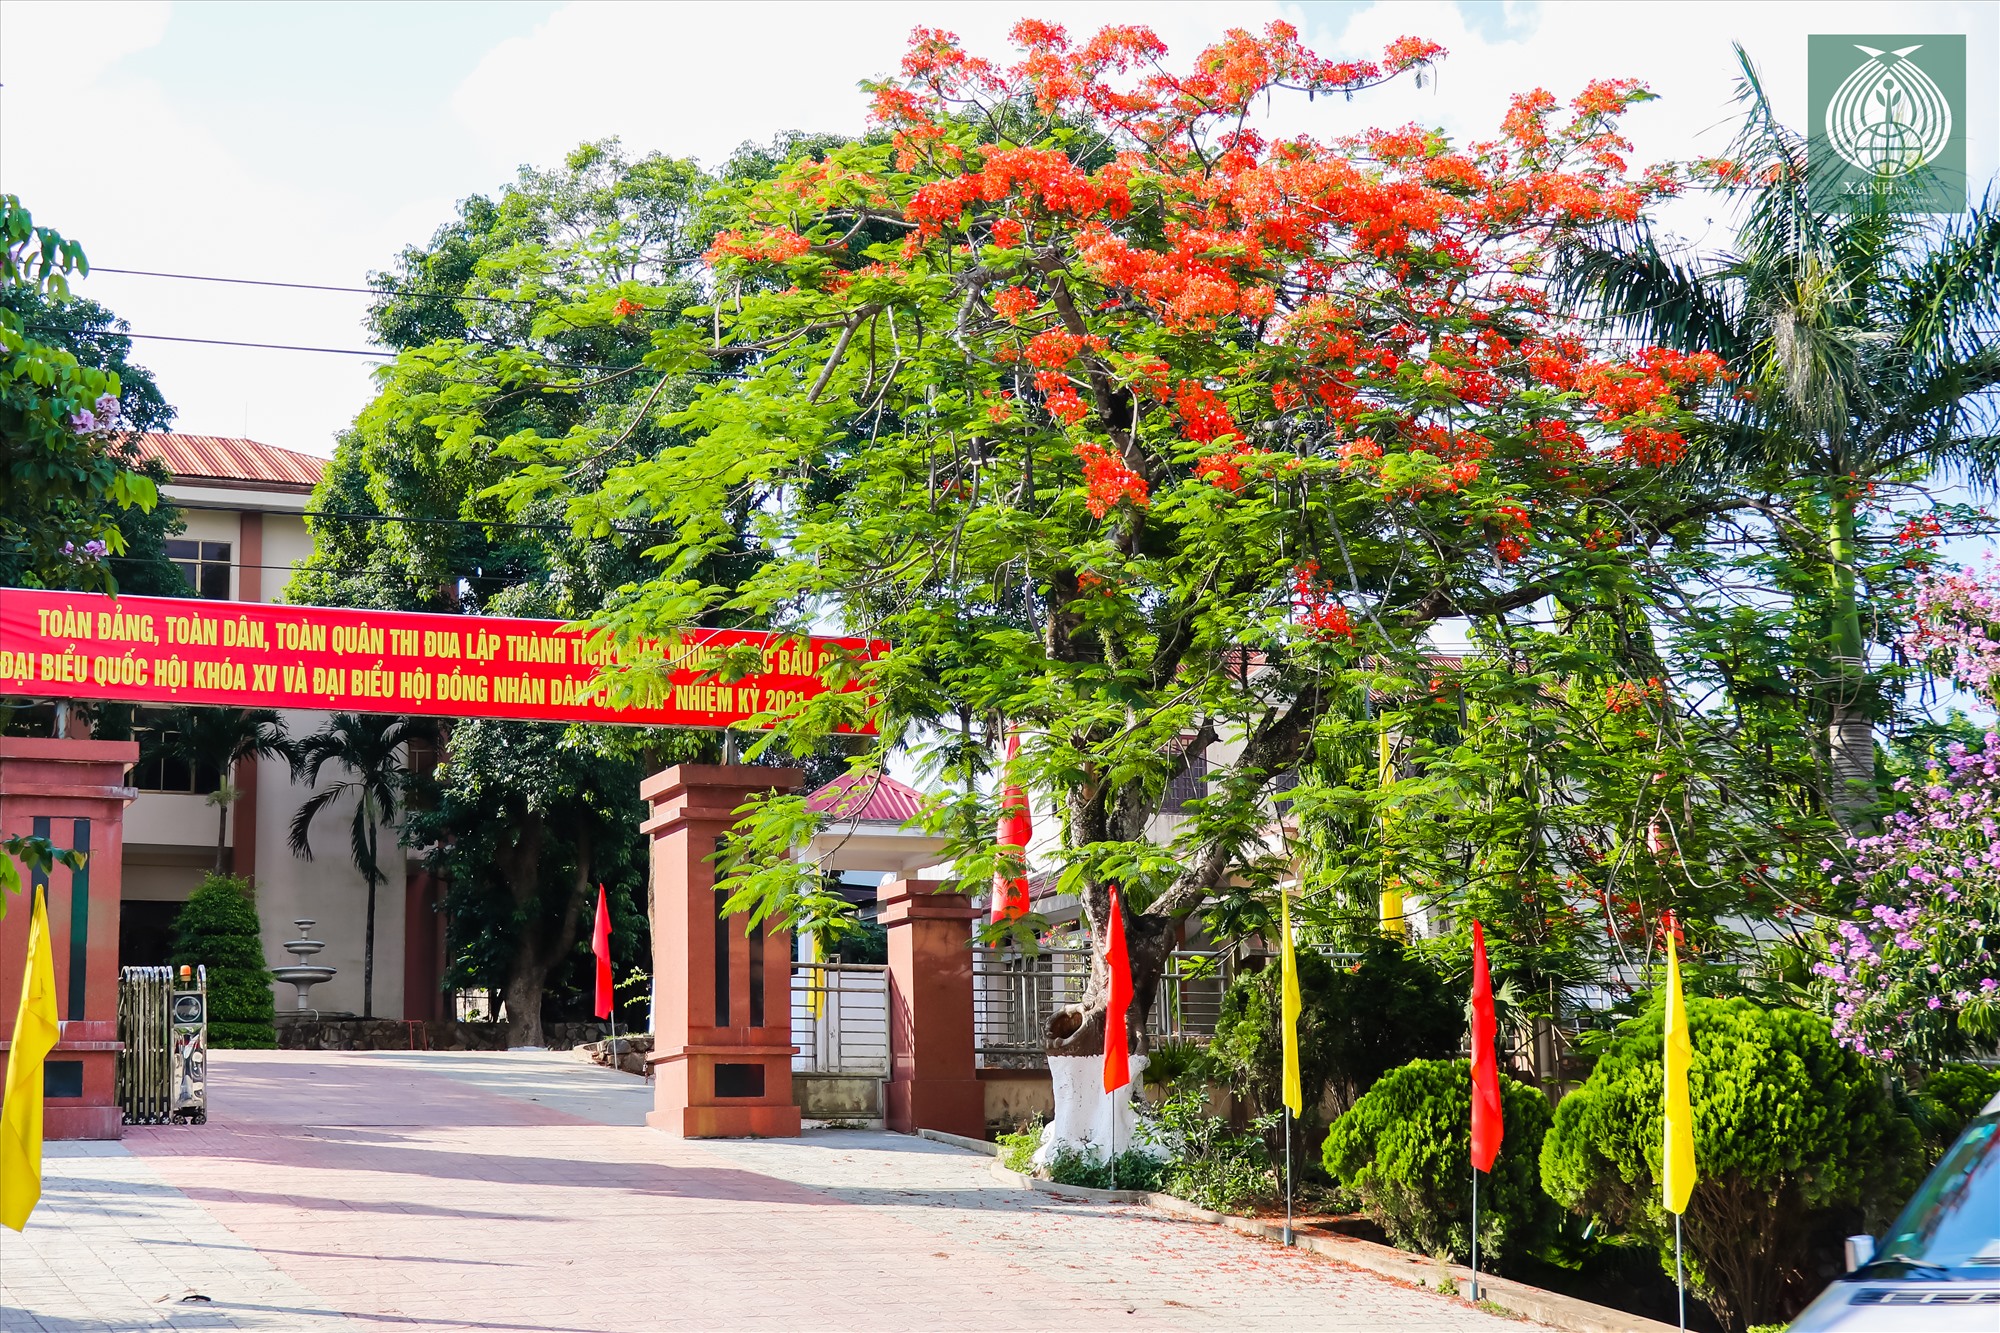 Một cây phượng đỏ đã đến độ nở rộ trước trụ sở UBND huyện Hướng Hóa (Quảng Trị) trong ánh nắng vàng mùa hạ.